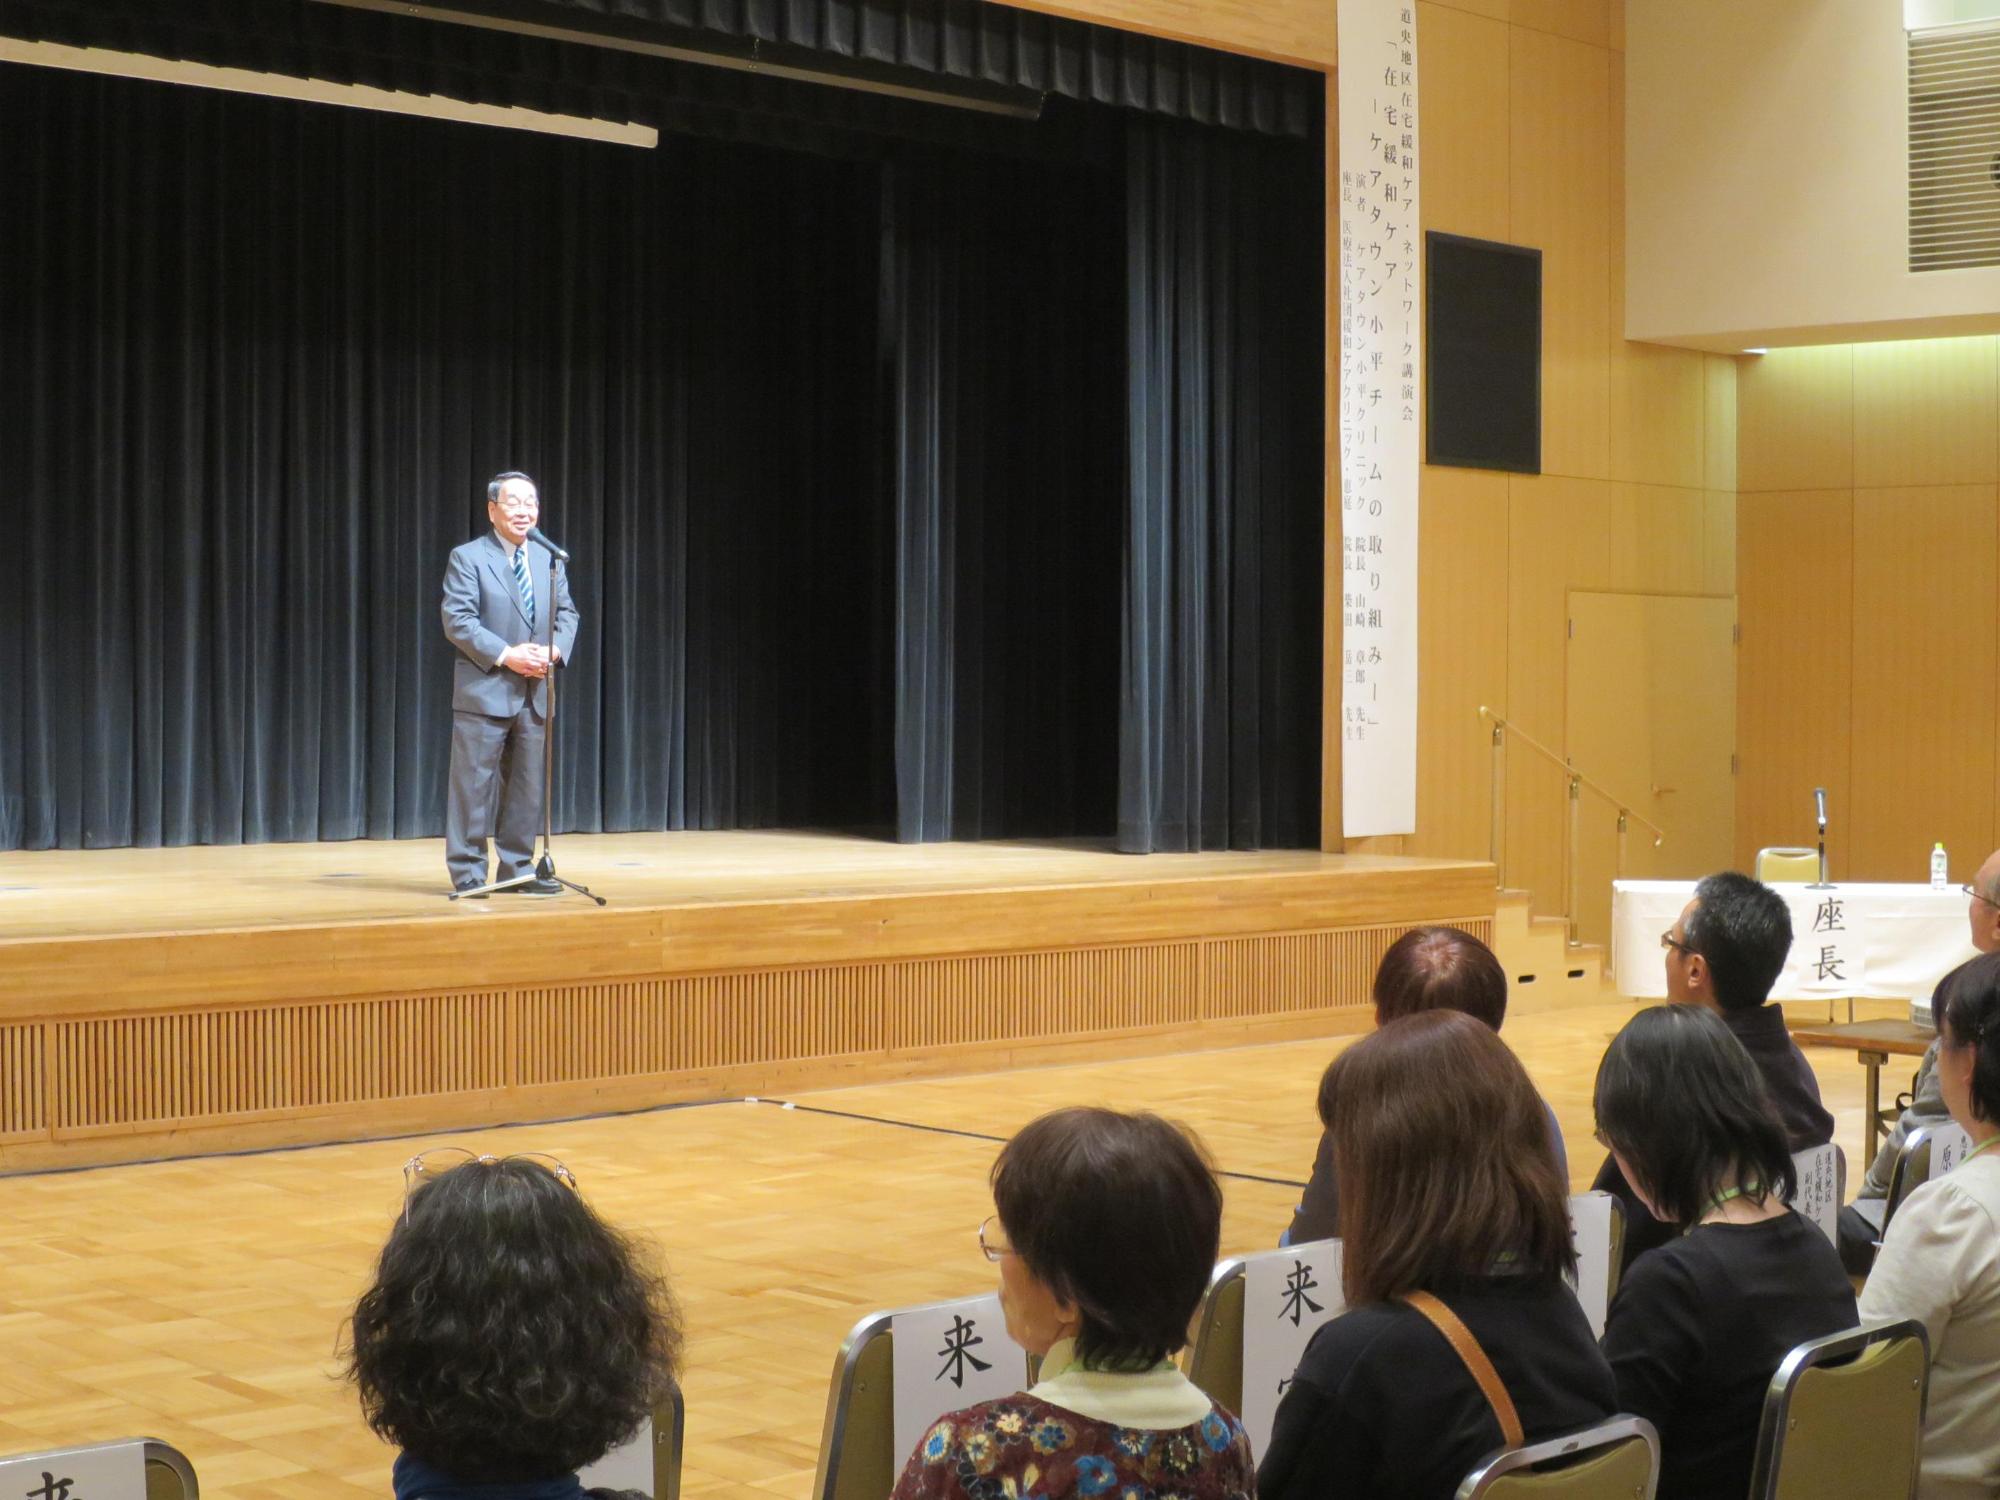 「道央地区在宅緩和ケアネットワーク講演会」にて挨拶をしている原田市長の写真